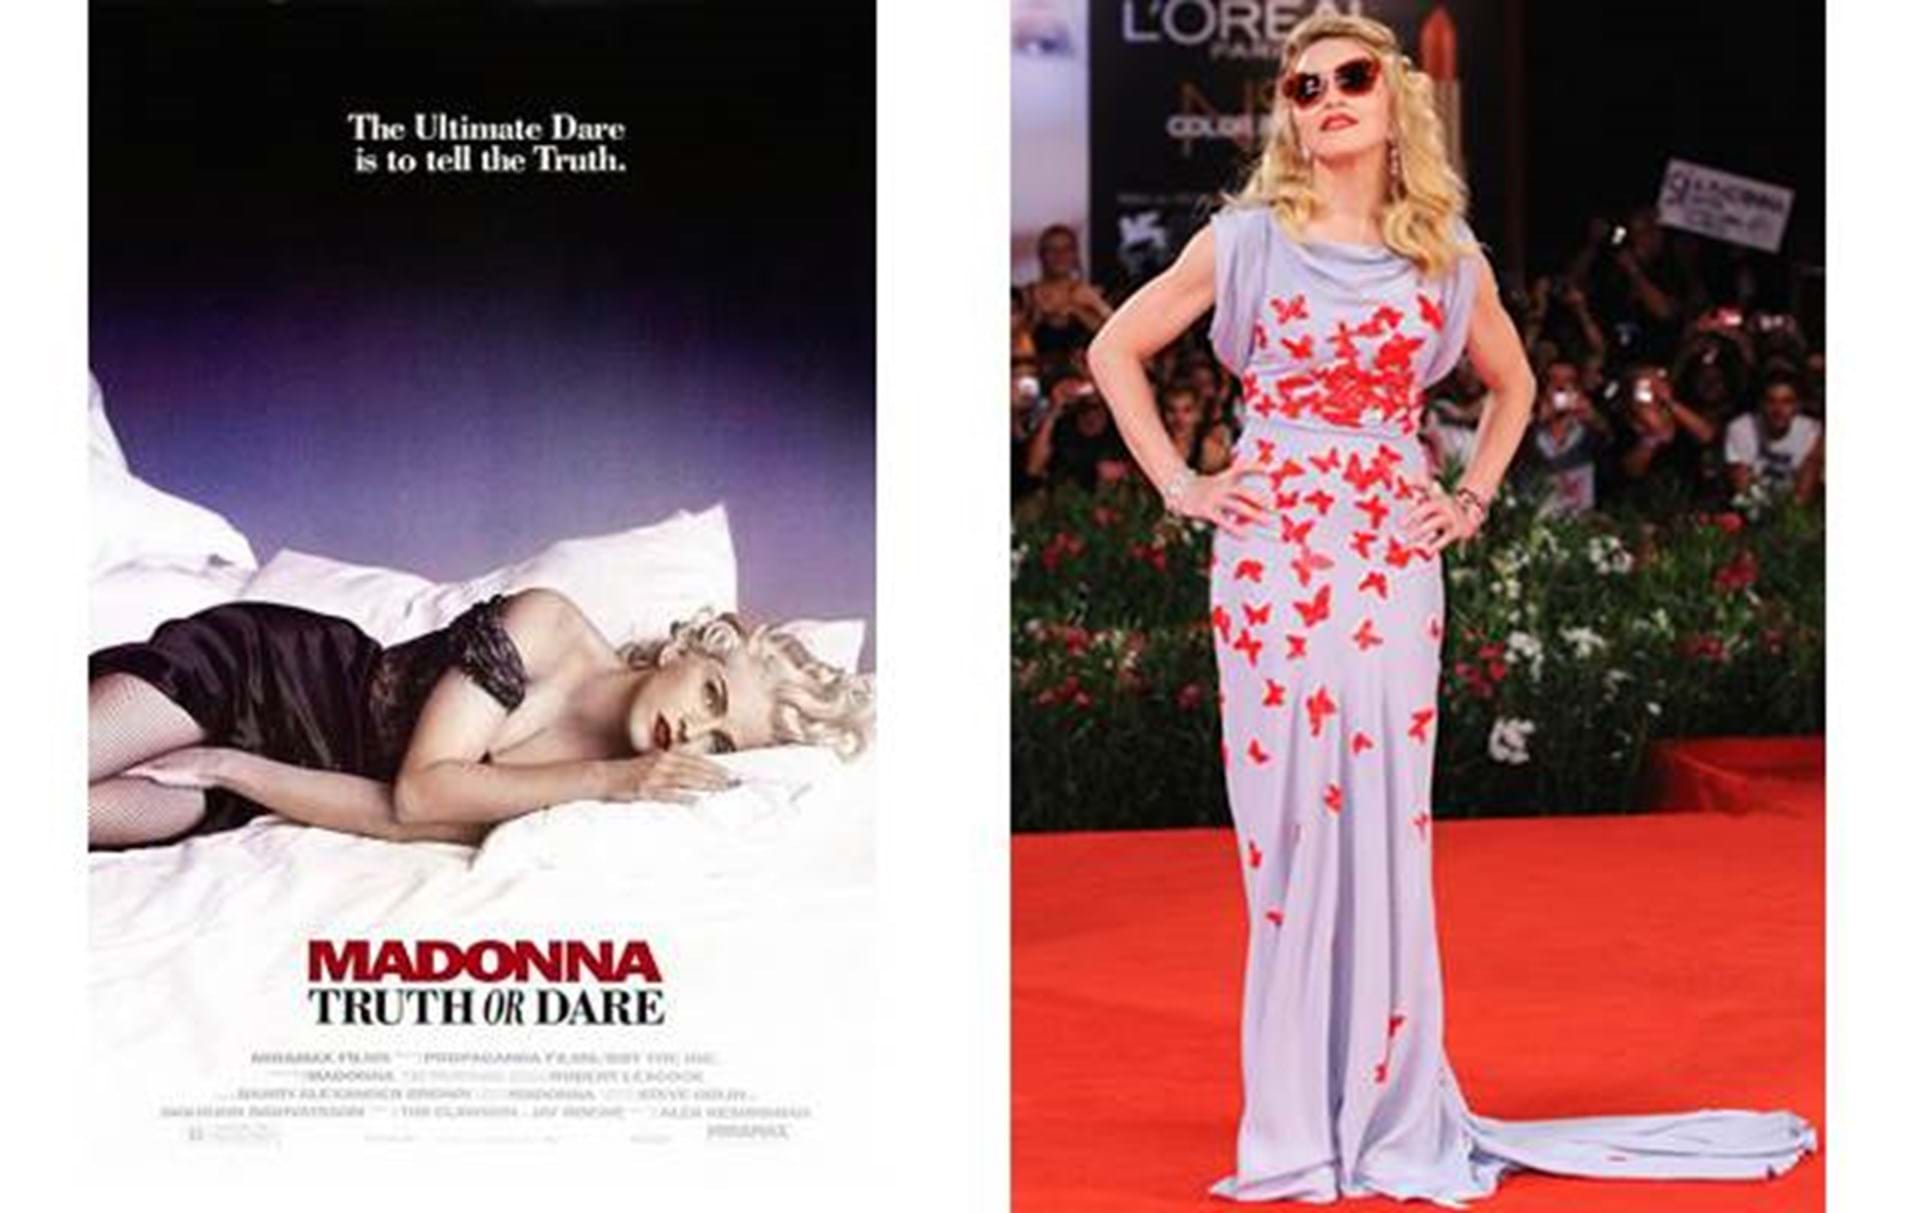 Madonna designer klæder duft - Eurowoman - ALT.dk